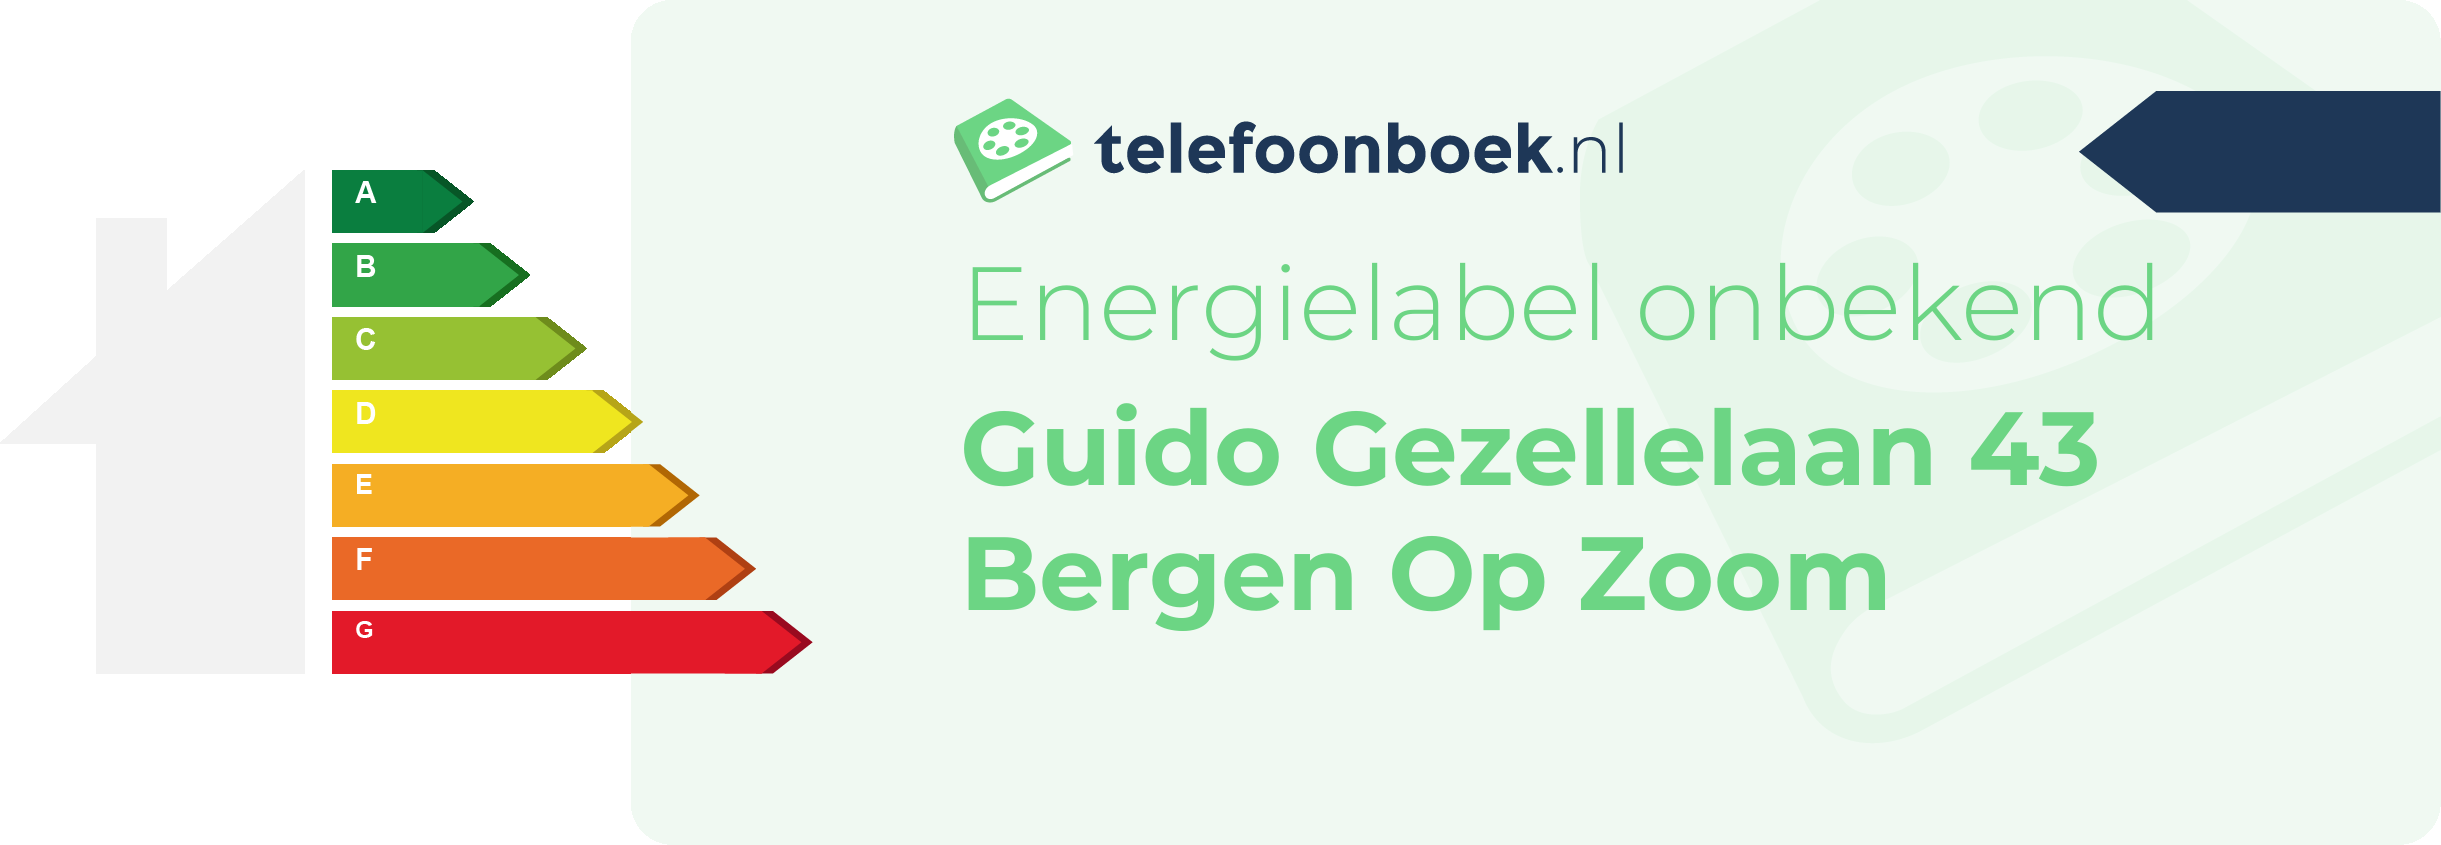 Energielabel Guido Gezellelaan 43 Bergen Op Zoom